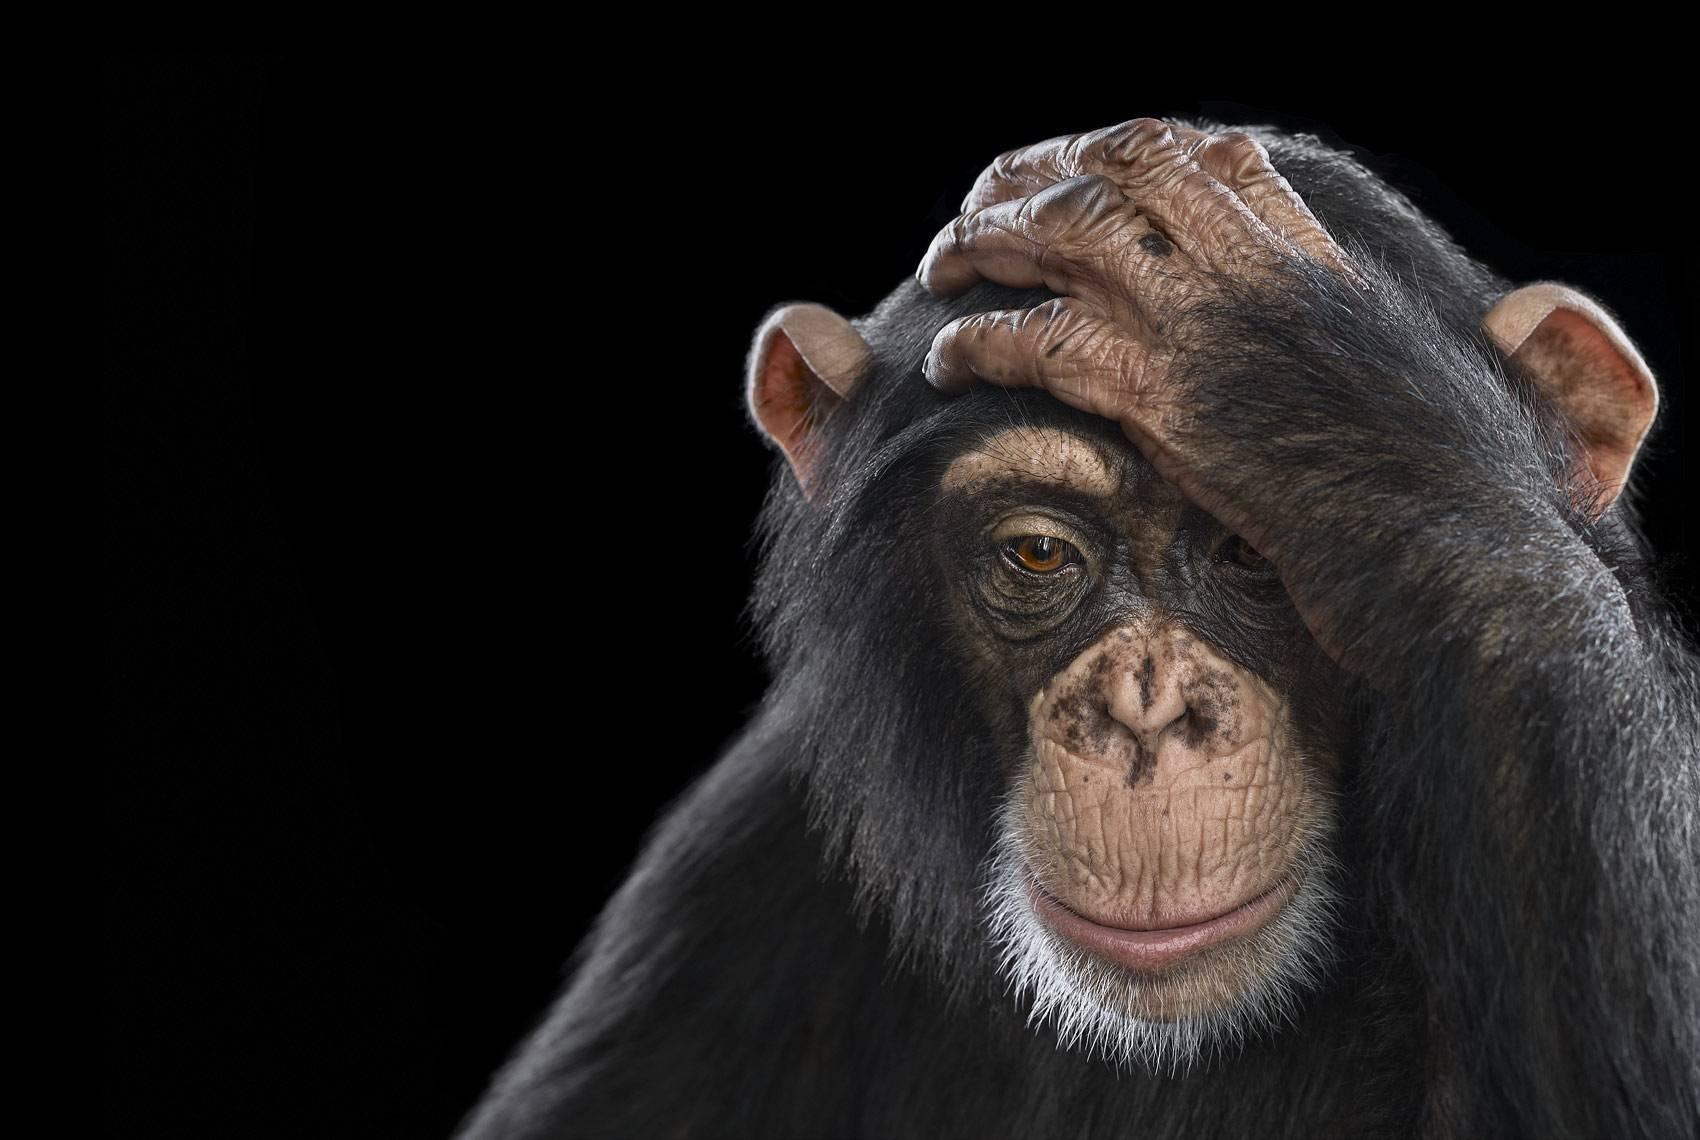 Schimpanse #2, Los Angeles, Kalifornien, 2010" ist eine limitierte Auflage einer Fotografie des zeitgenössischen Künstlers Brad Wilson aus der Serie "Affinity", die Studioporträts von Wildtieren zeigt. 

Dieses Foto wird nur als ungerahmter Abzug